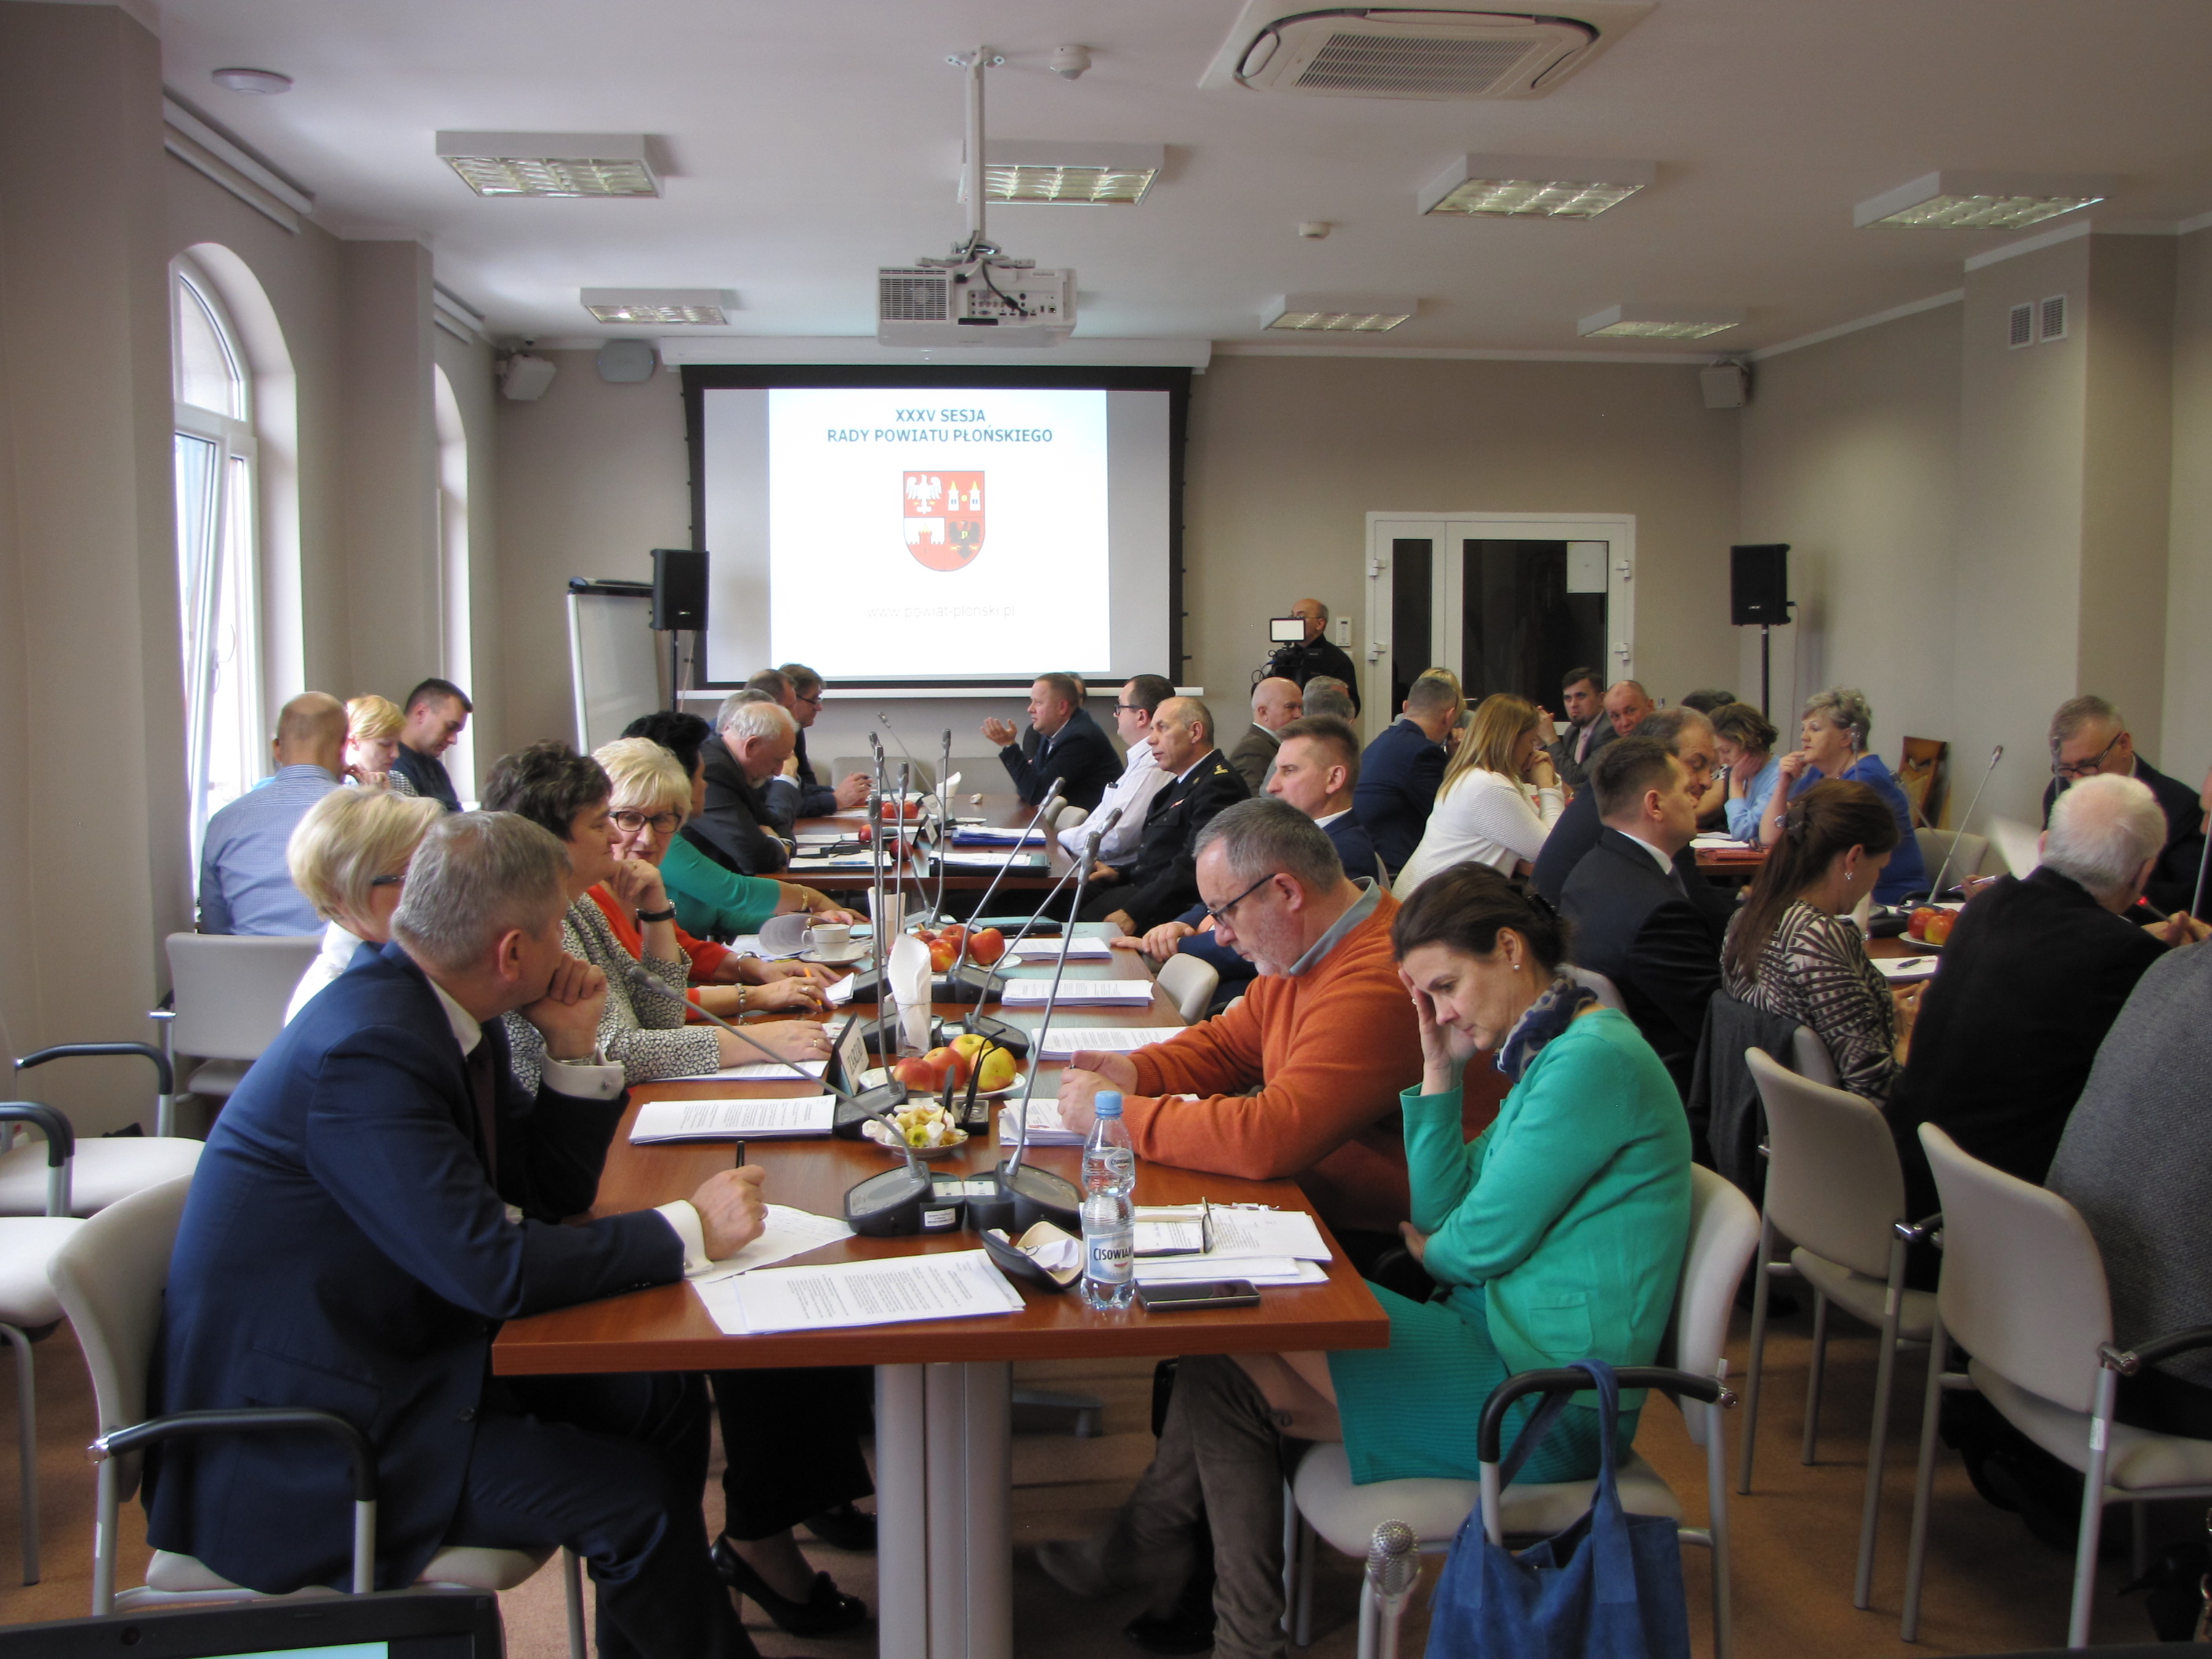 Radni, zaproszeni goście i inni uczestnicy podczas obrad Rady Powiatu Płońskiego